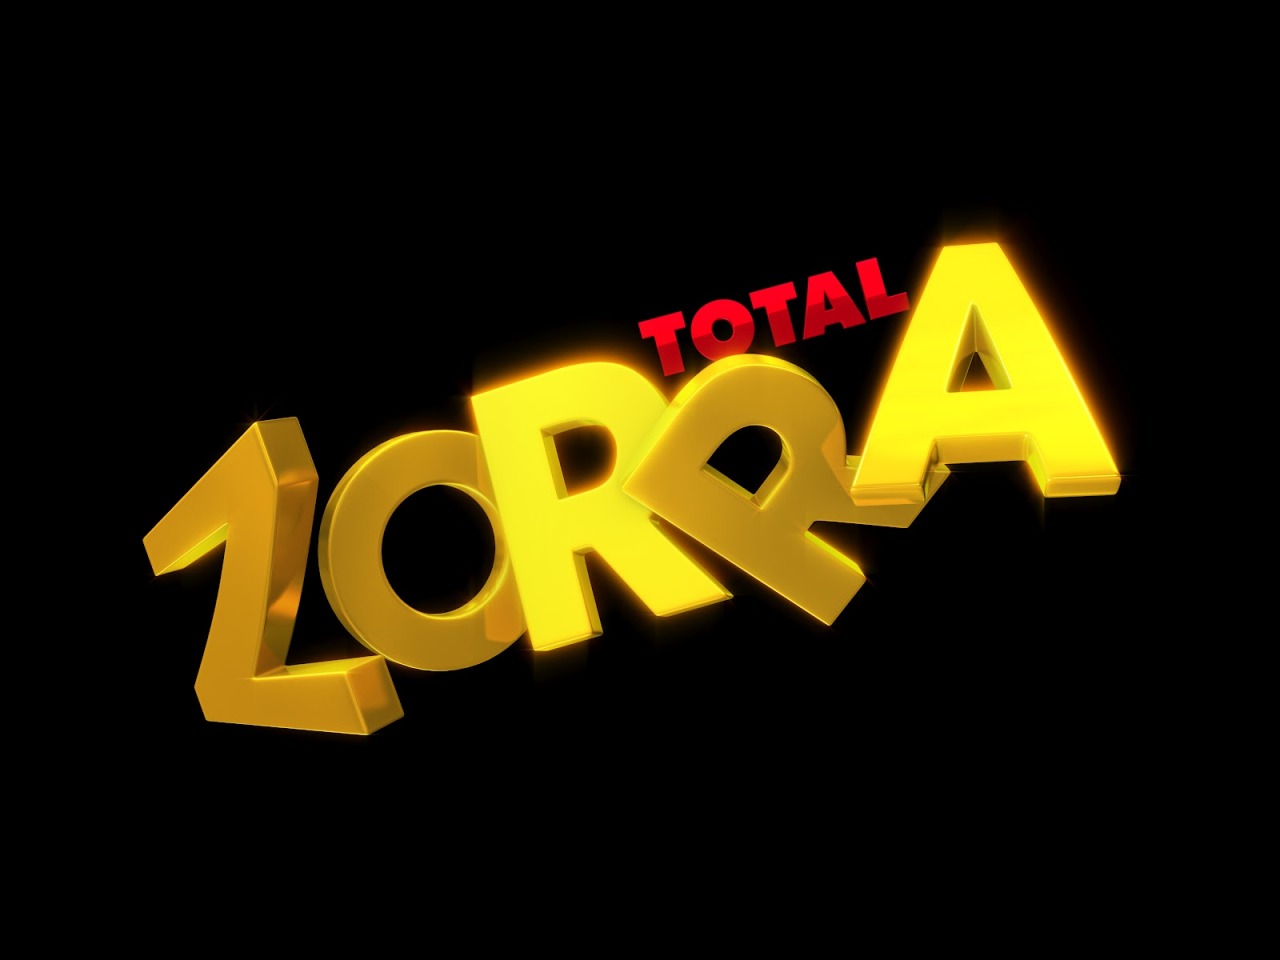 Globo muda data de estreia do novo “Zorra”. Saiba mais!
Prevista para estrear a sua nova temporada em abril, o programa “Zorra Total”, que passará por uma reformulação esse ano, até no nome que será apenas “Zorra”, irá estrear agora somente em maio.